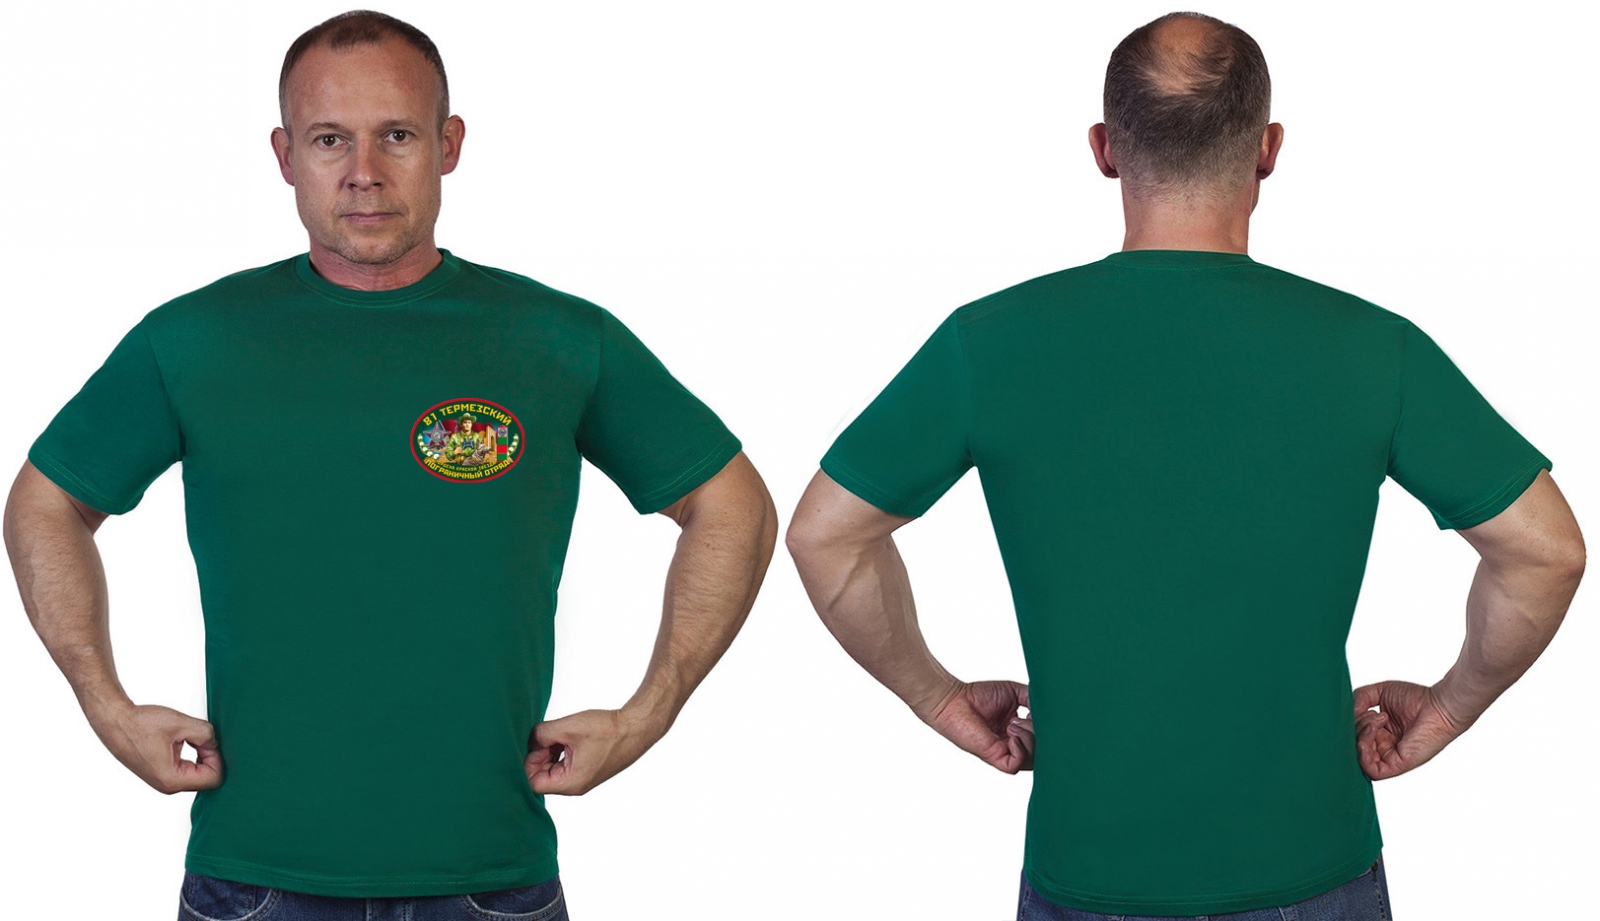 Зелёная футболка "81 Термезский пограничный отряд" 